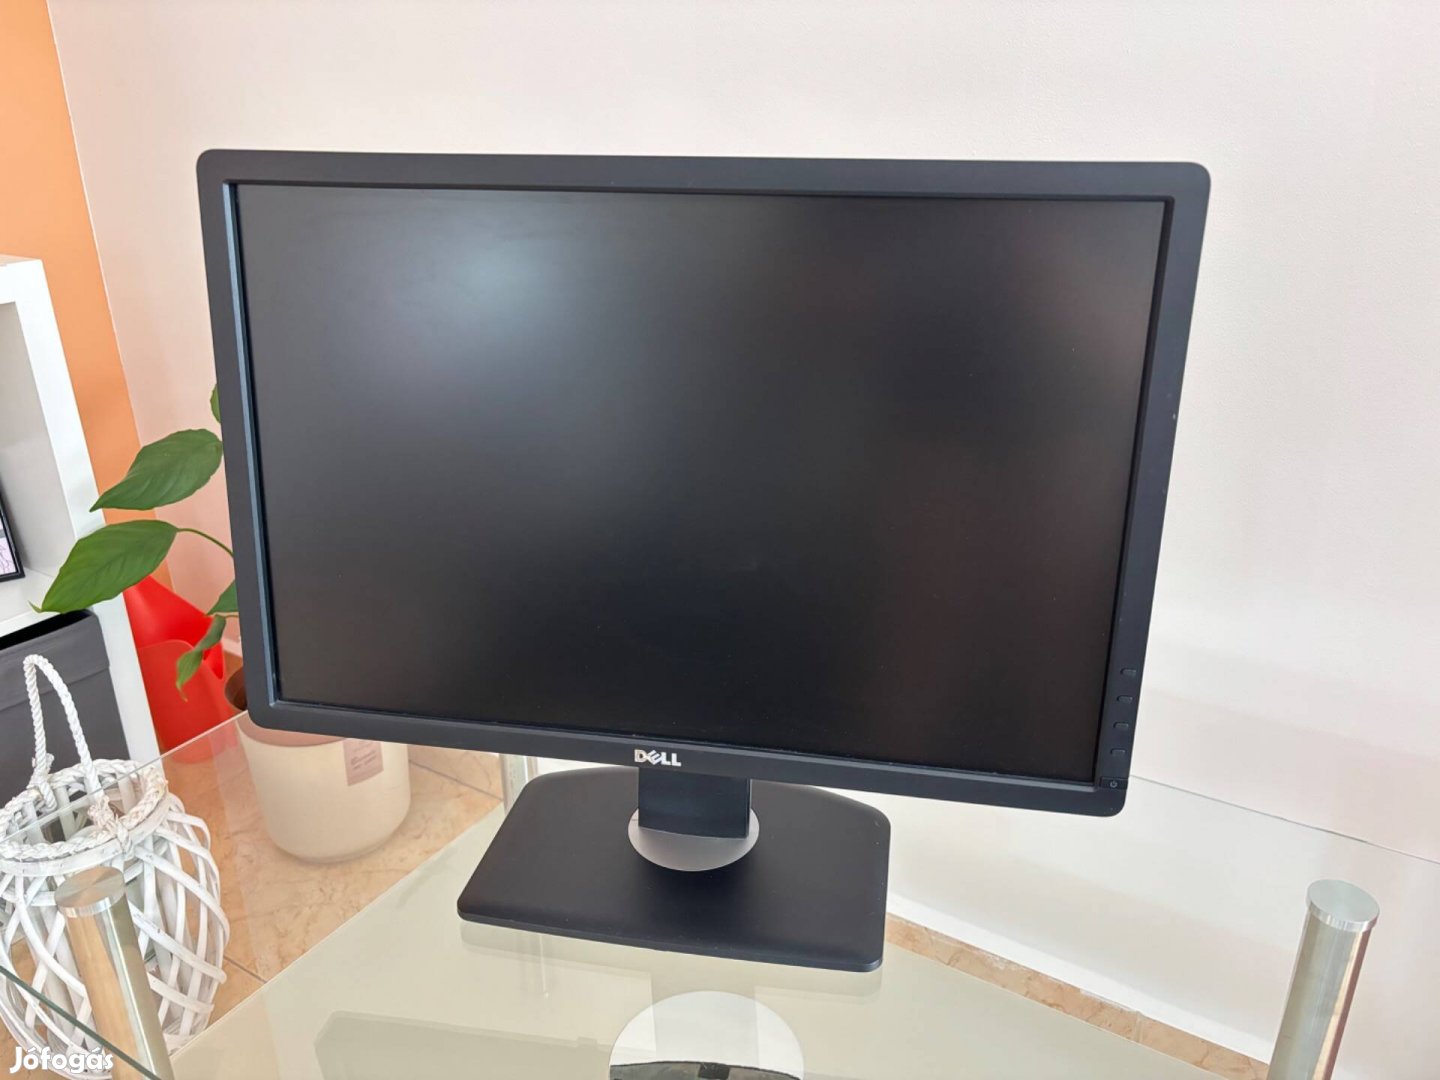 Dell P2213t monitor